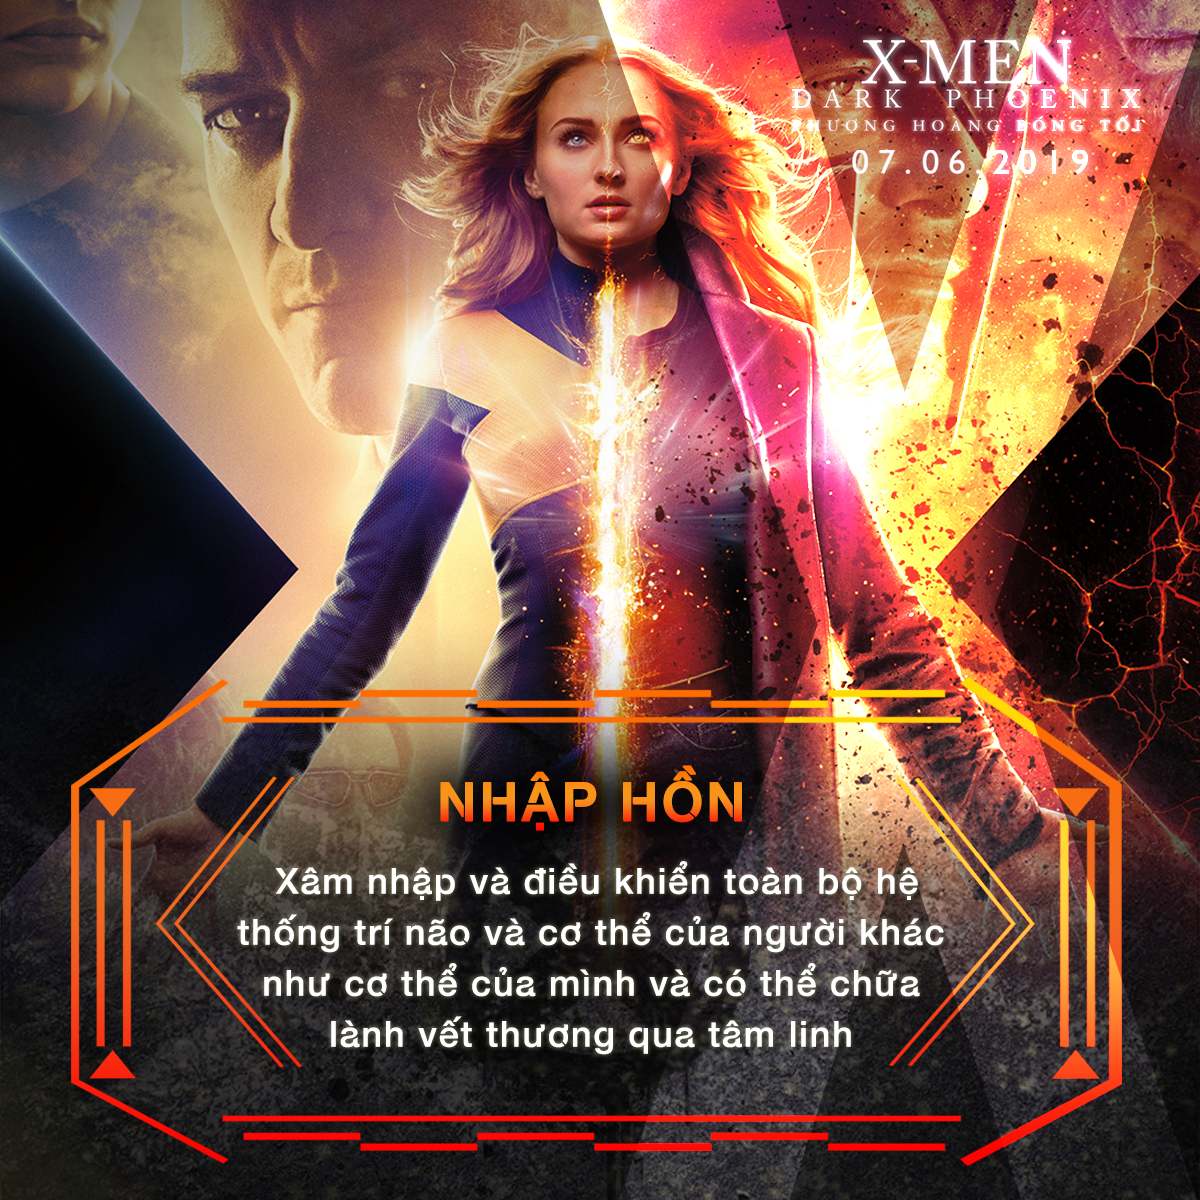 Choáng ngợp với sức mạnh bá đạo của người đẹp Jean Grey trong vũ trụ dị nhân X-Men - Ảnh 8.